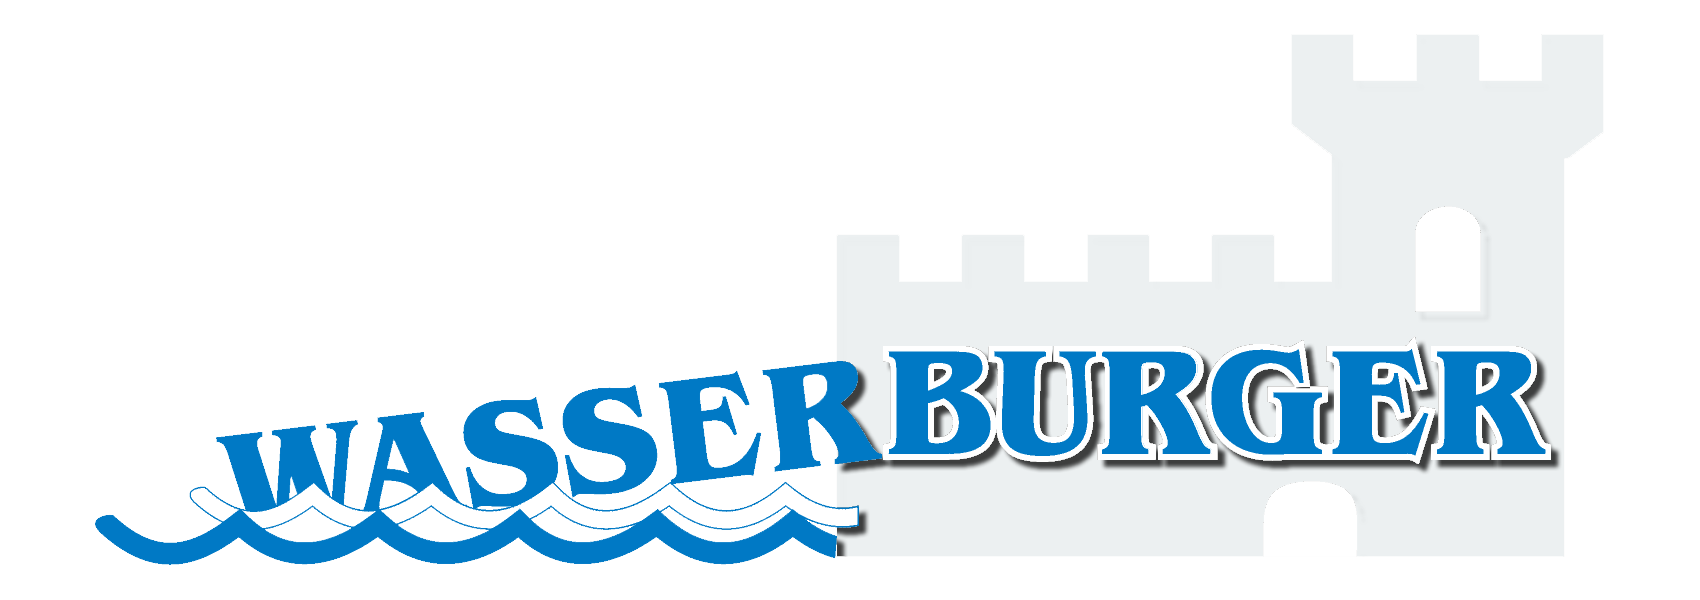 Wasserburger logo